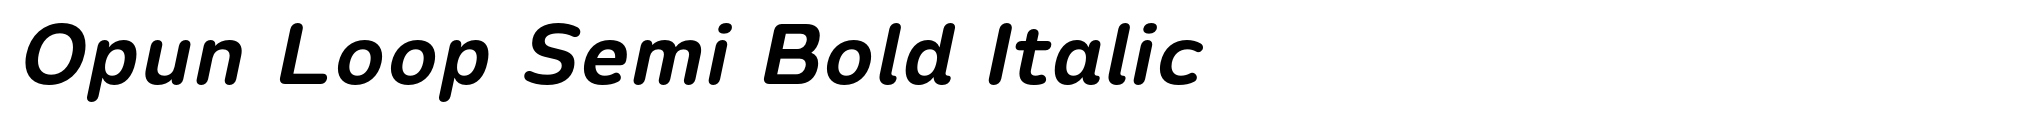 Opun Loop Semi Bold Italic image